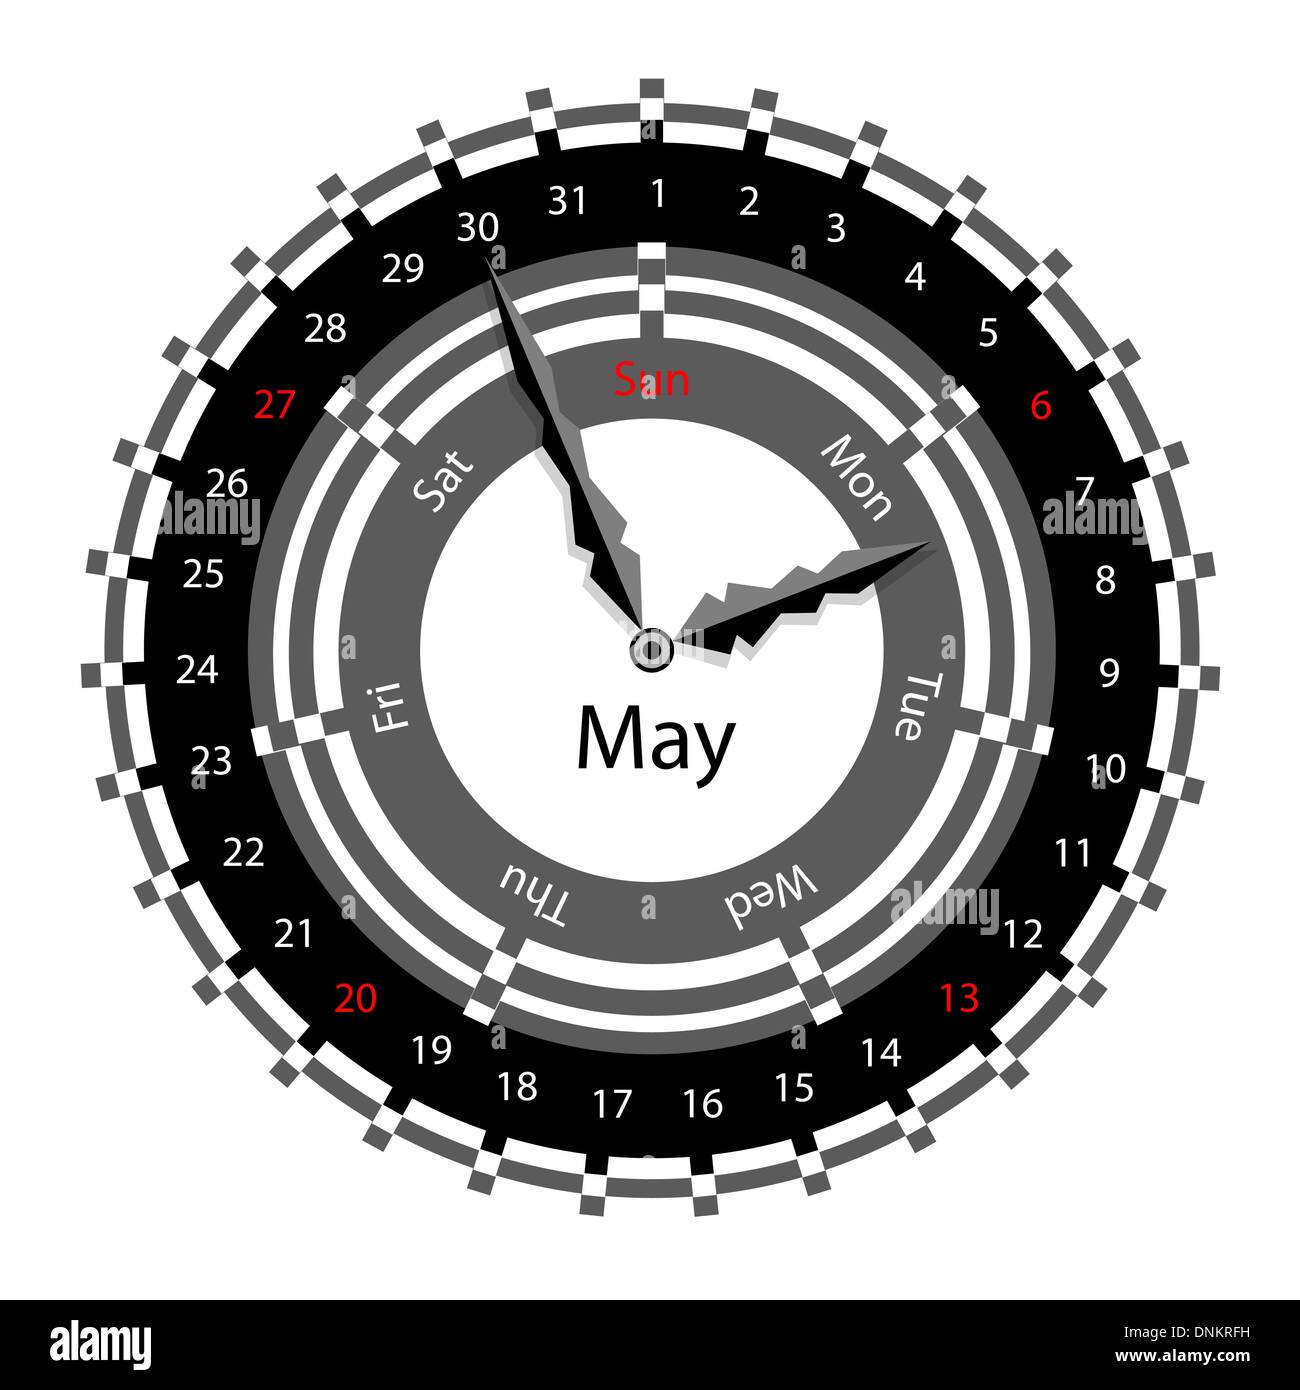 Creative idea of design of a Clock with circular calendar for 2012